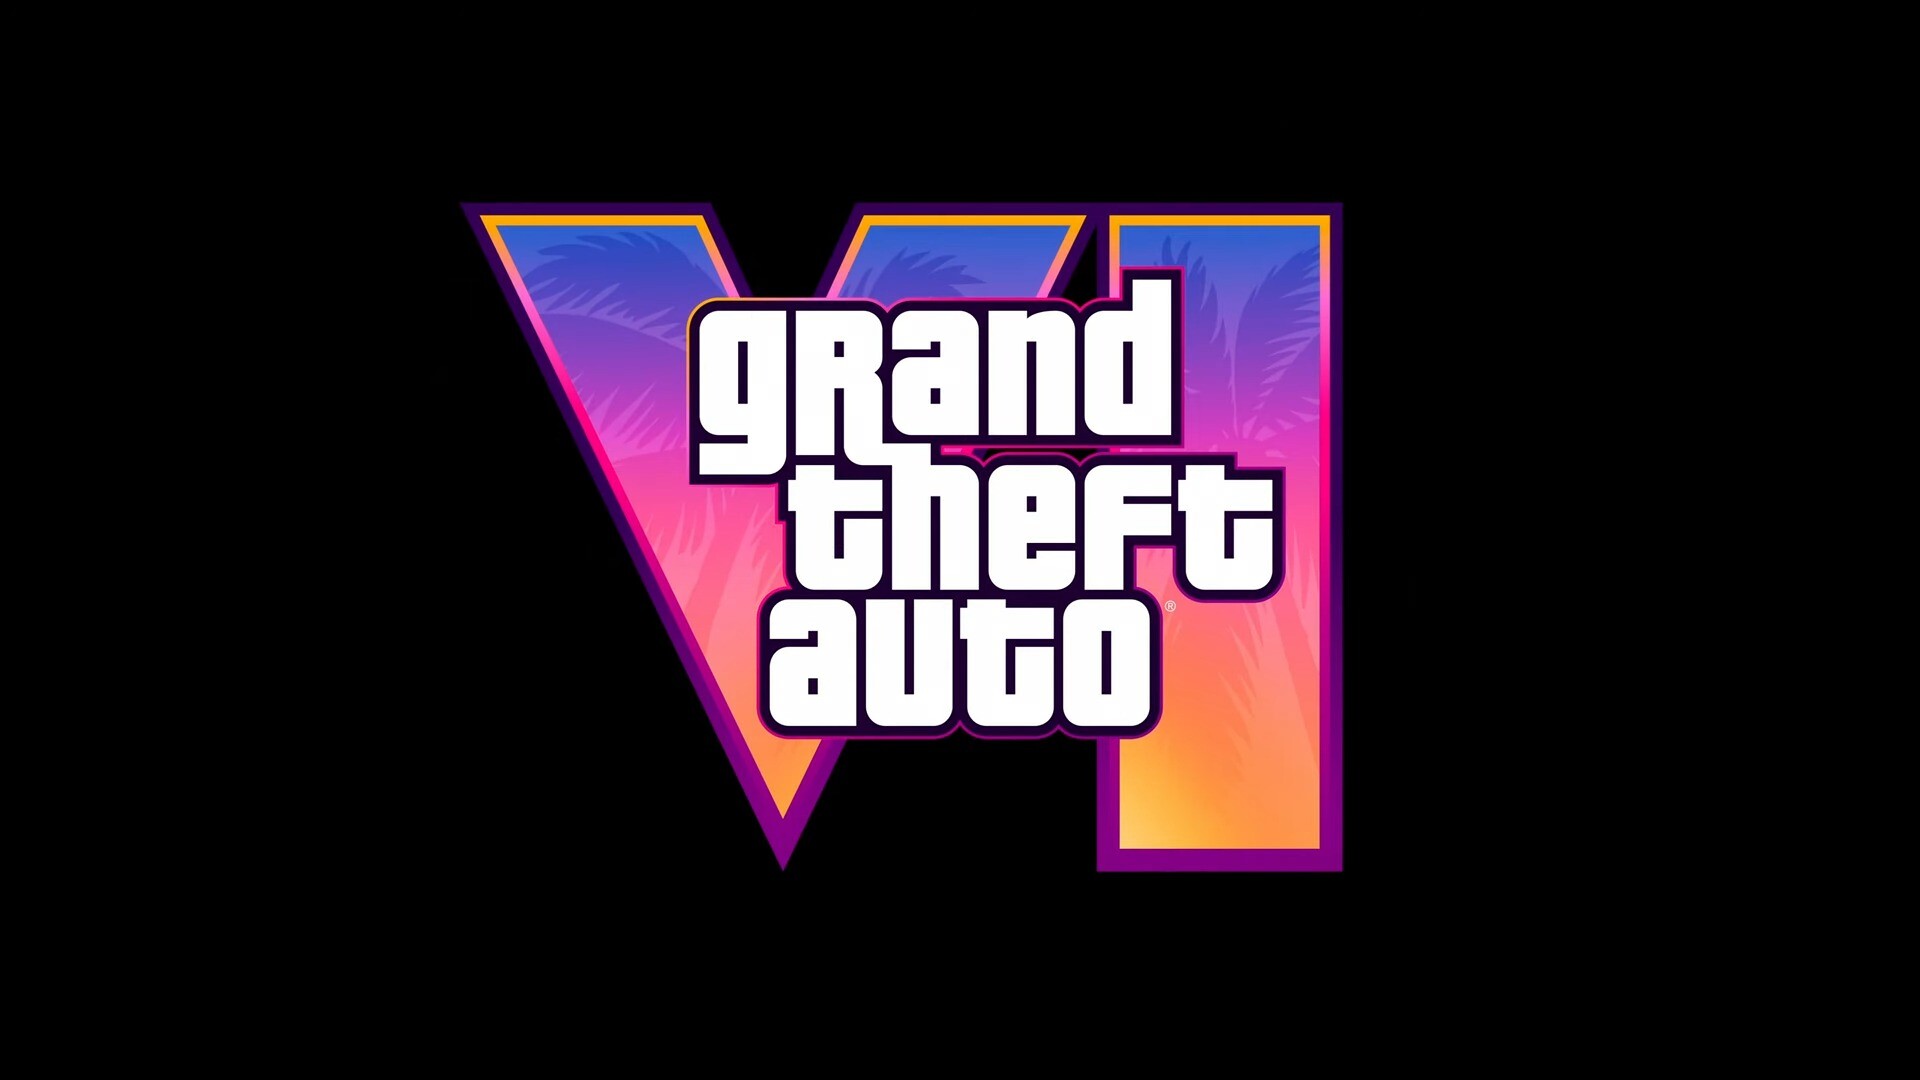 Продолжительность Grand Theft Auto VI составит 35-40 часов, согласно слухам: с сайта NEWXBOXONE.RU